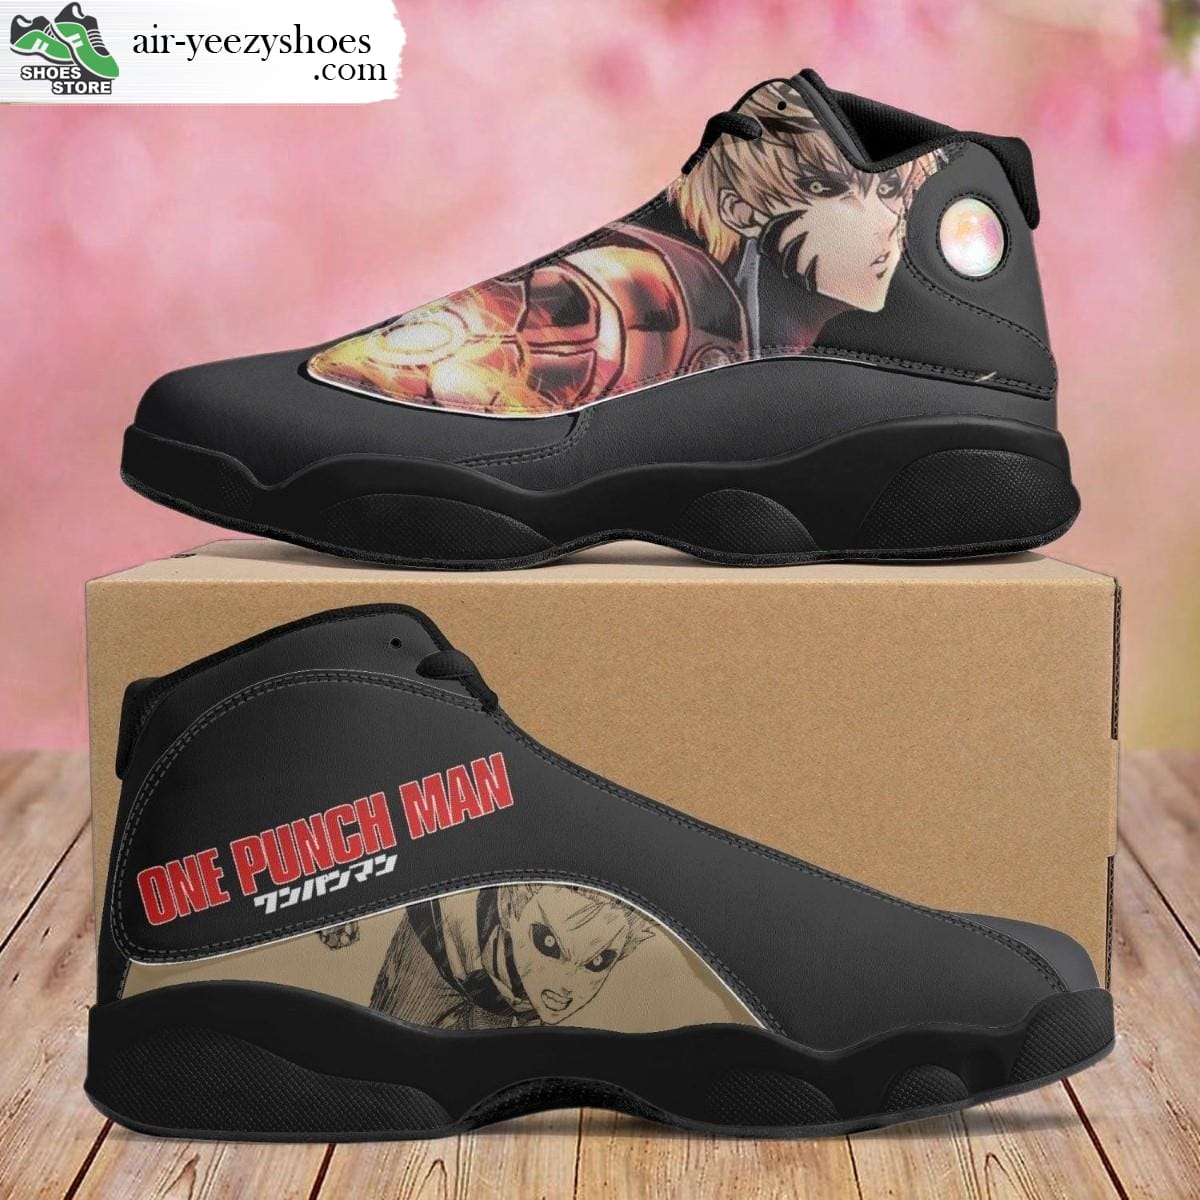 Genos Jordan 13 Shoes, Onepunch-Man Gift